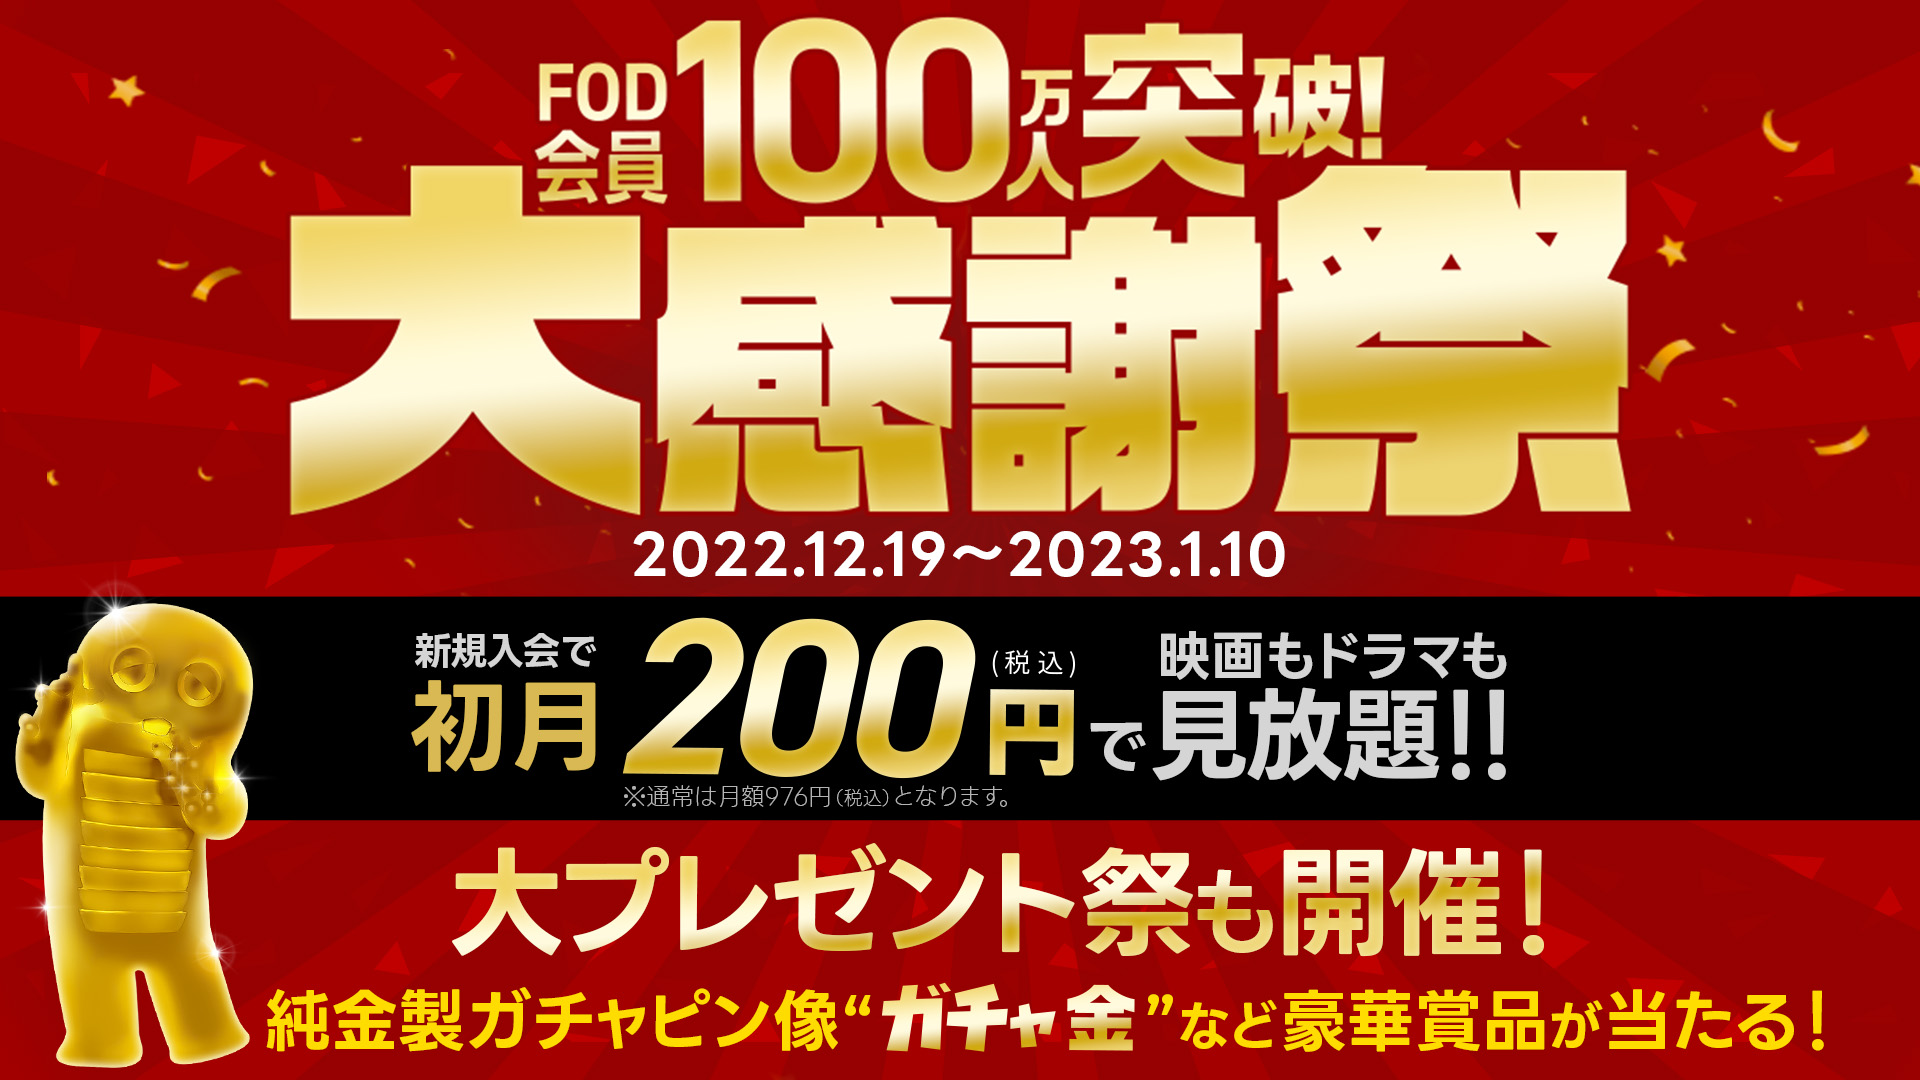 FODが会員100万人突破を記念した大感謝祭を開催！最初の1か月は200円